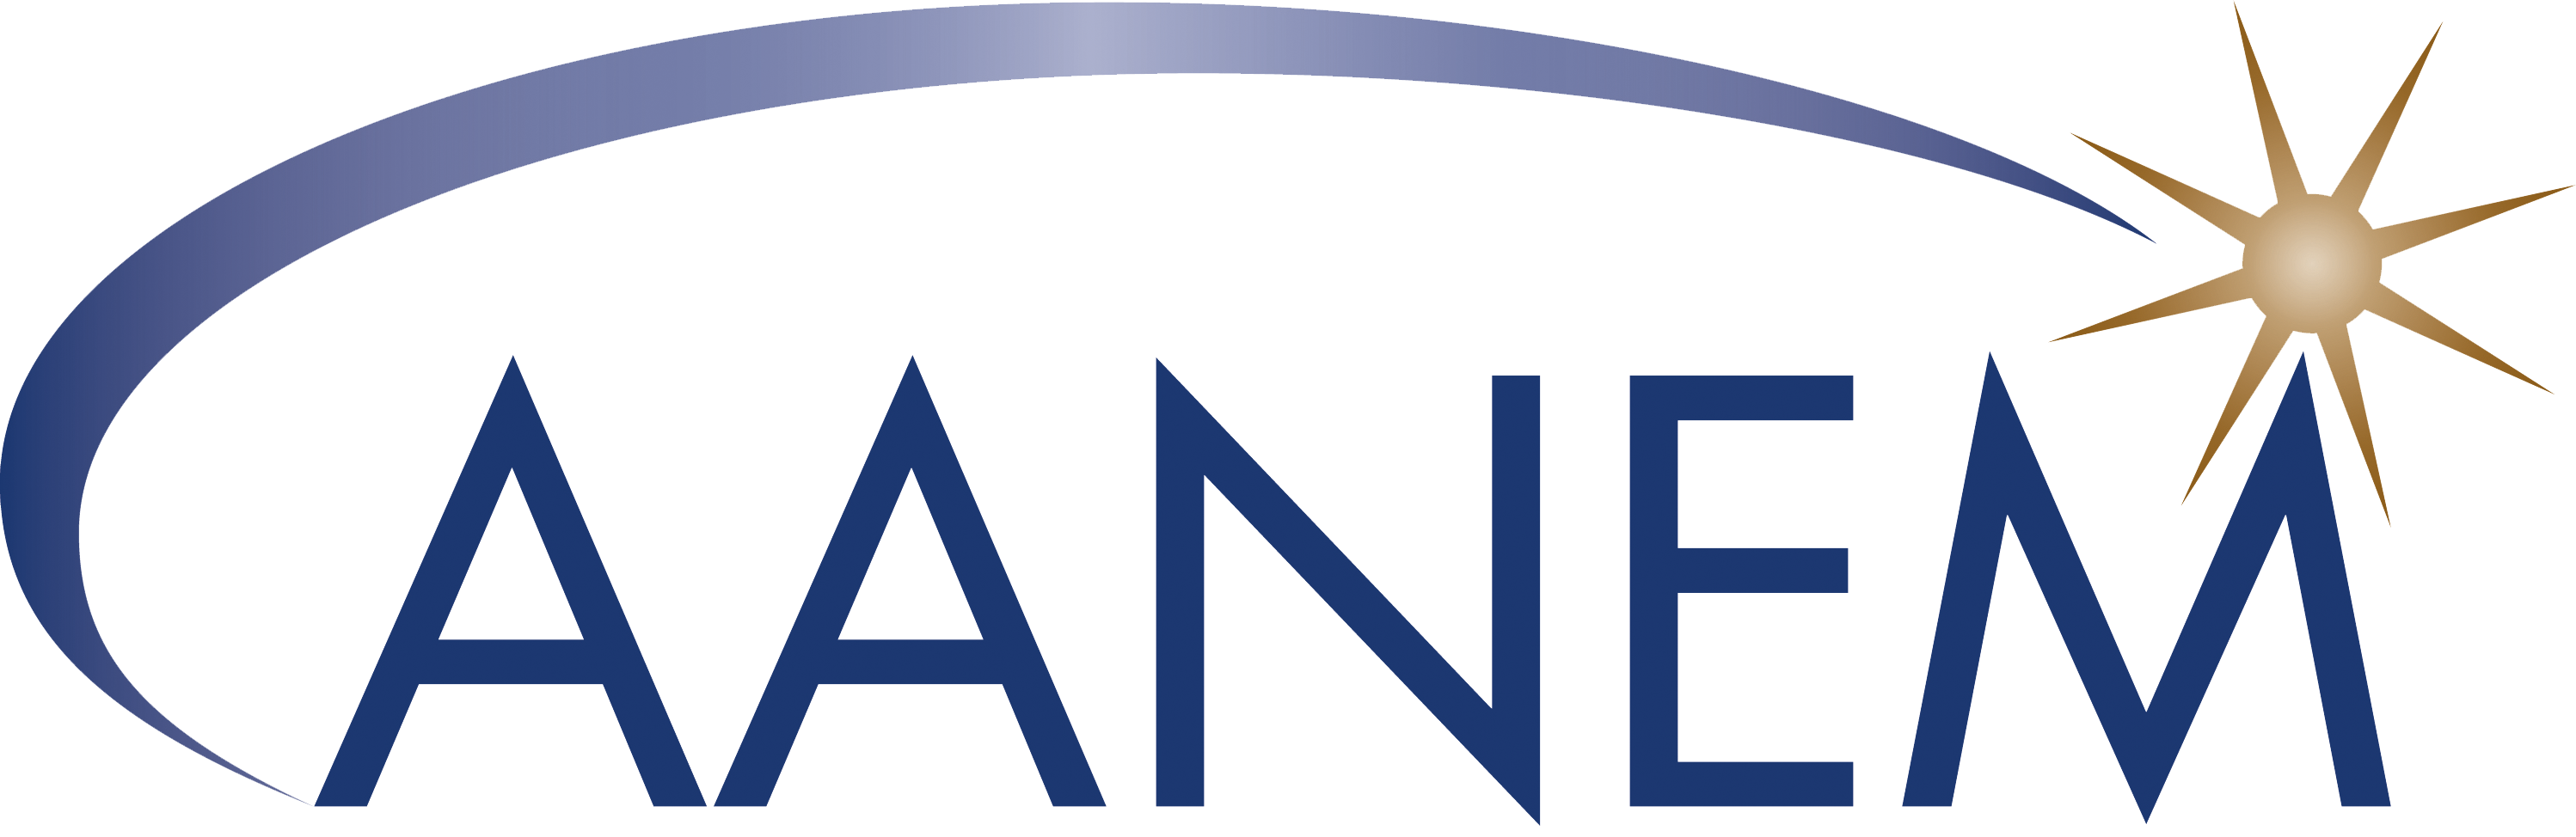 institutions-AANEM Logo Only.png